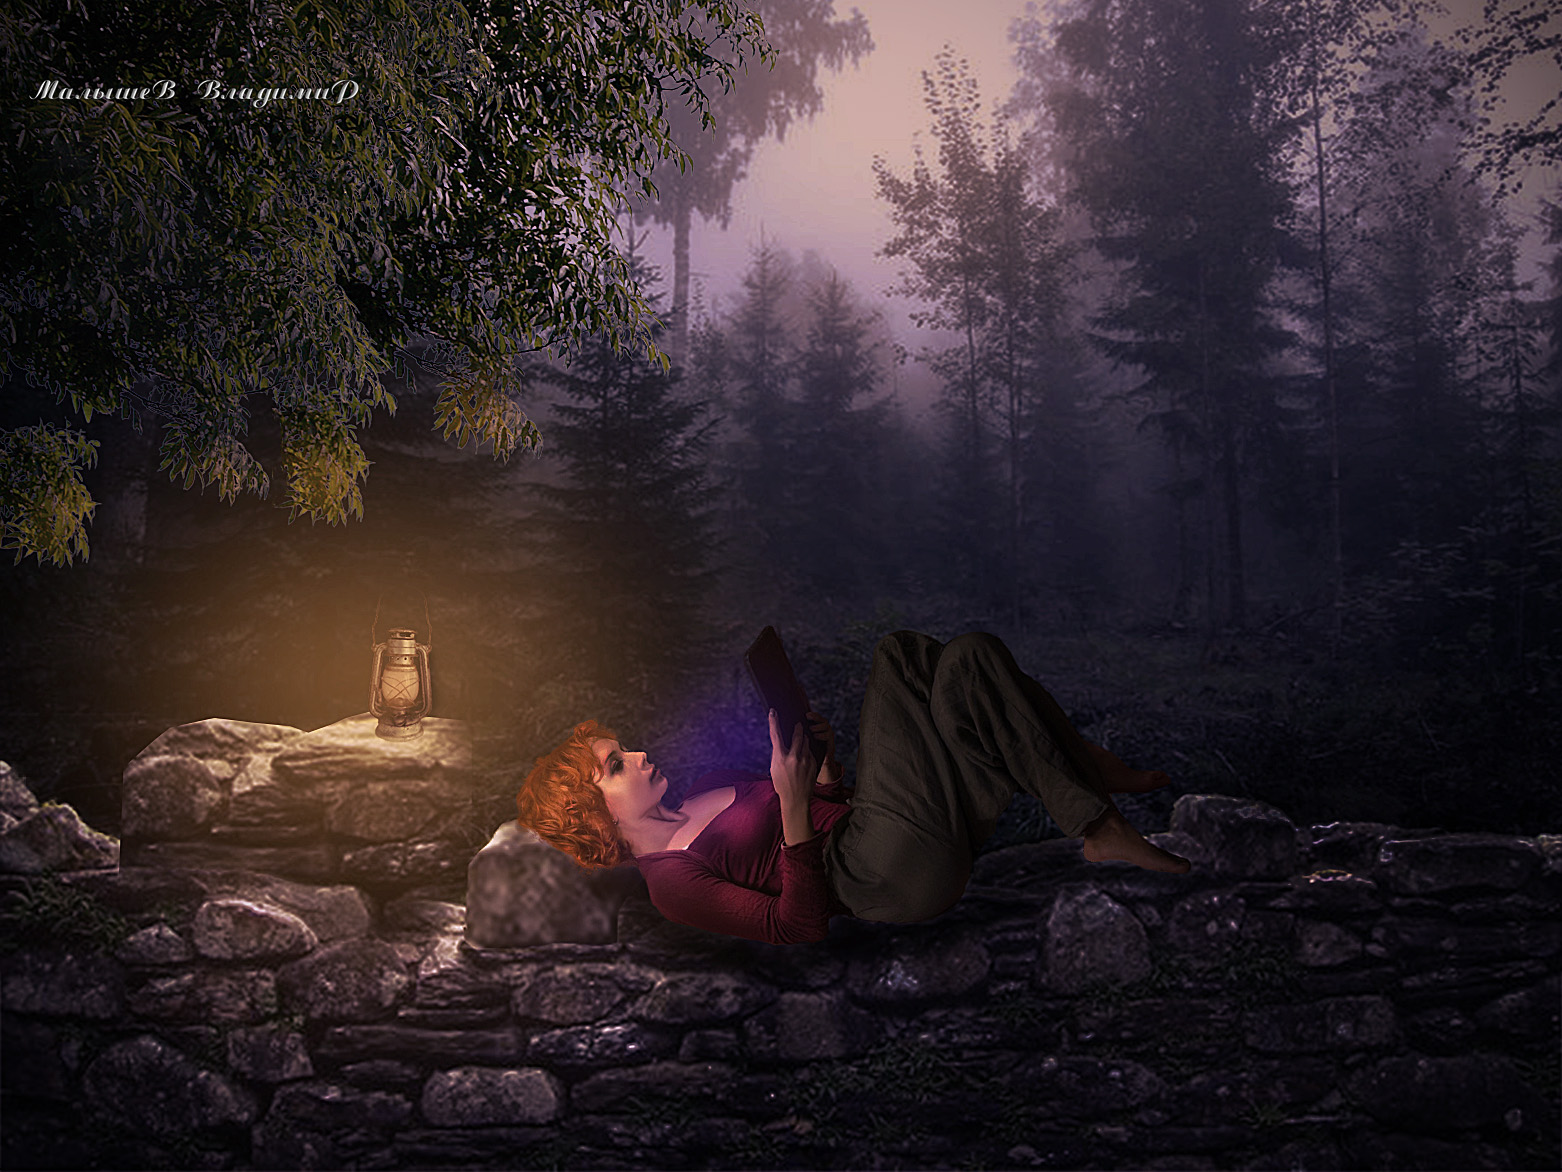 Фото Вечером, лежа на каменной стене, девушка читает электронную книгу под свет керосиновой лампы, фотограф Малышев Владимир